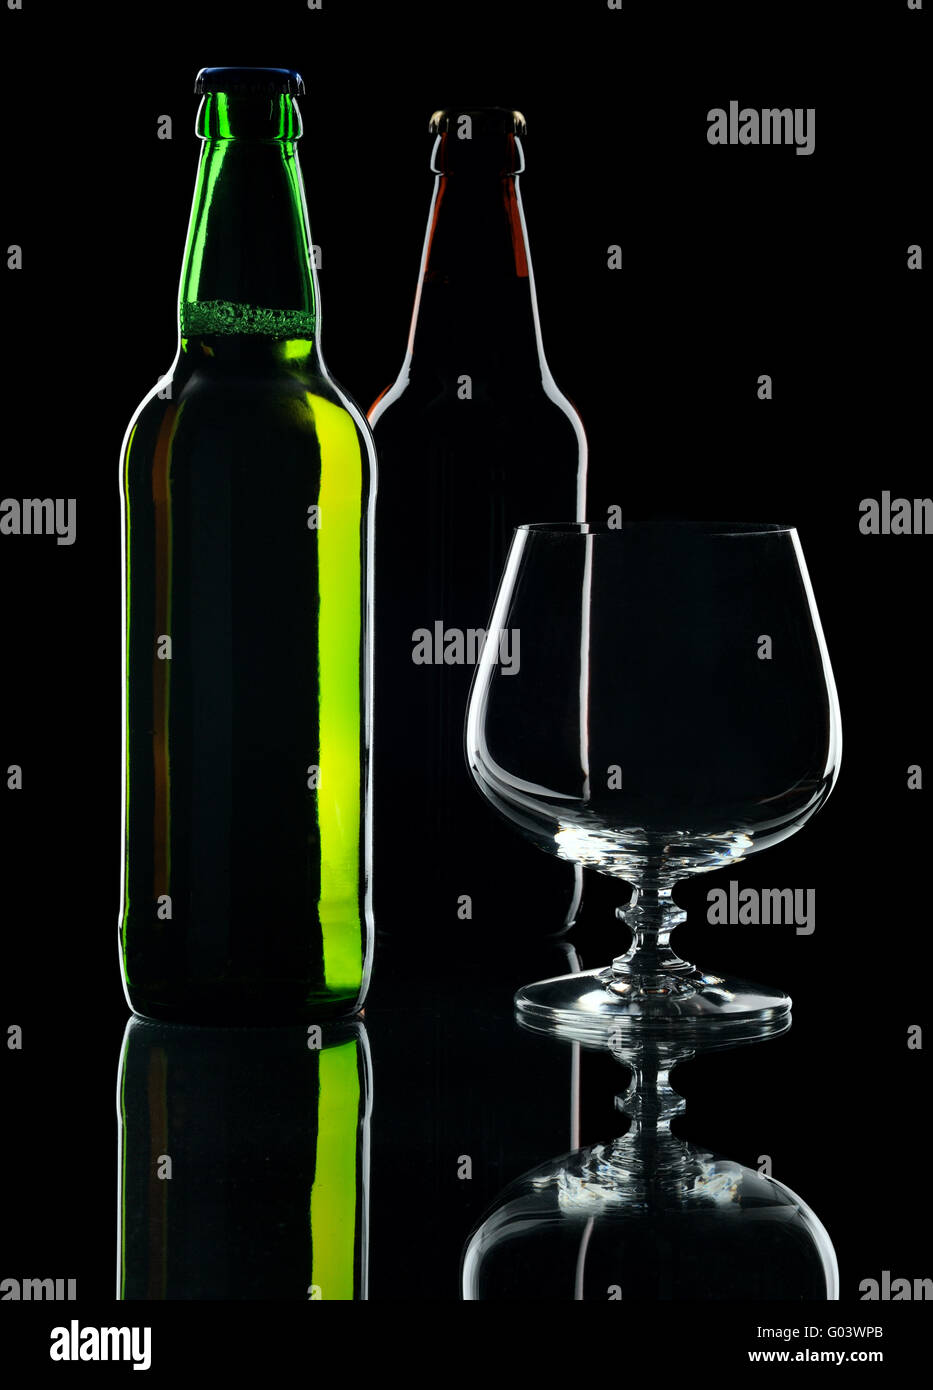 Le bottiglie di birra, isolata su uno sfondo nero Foto Stock